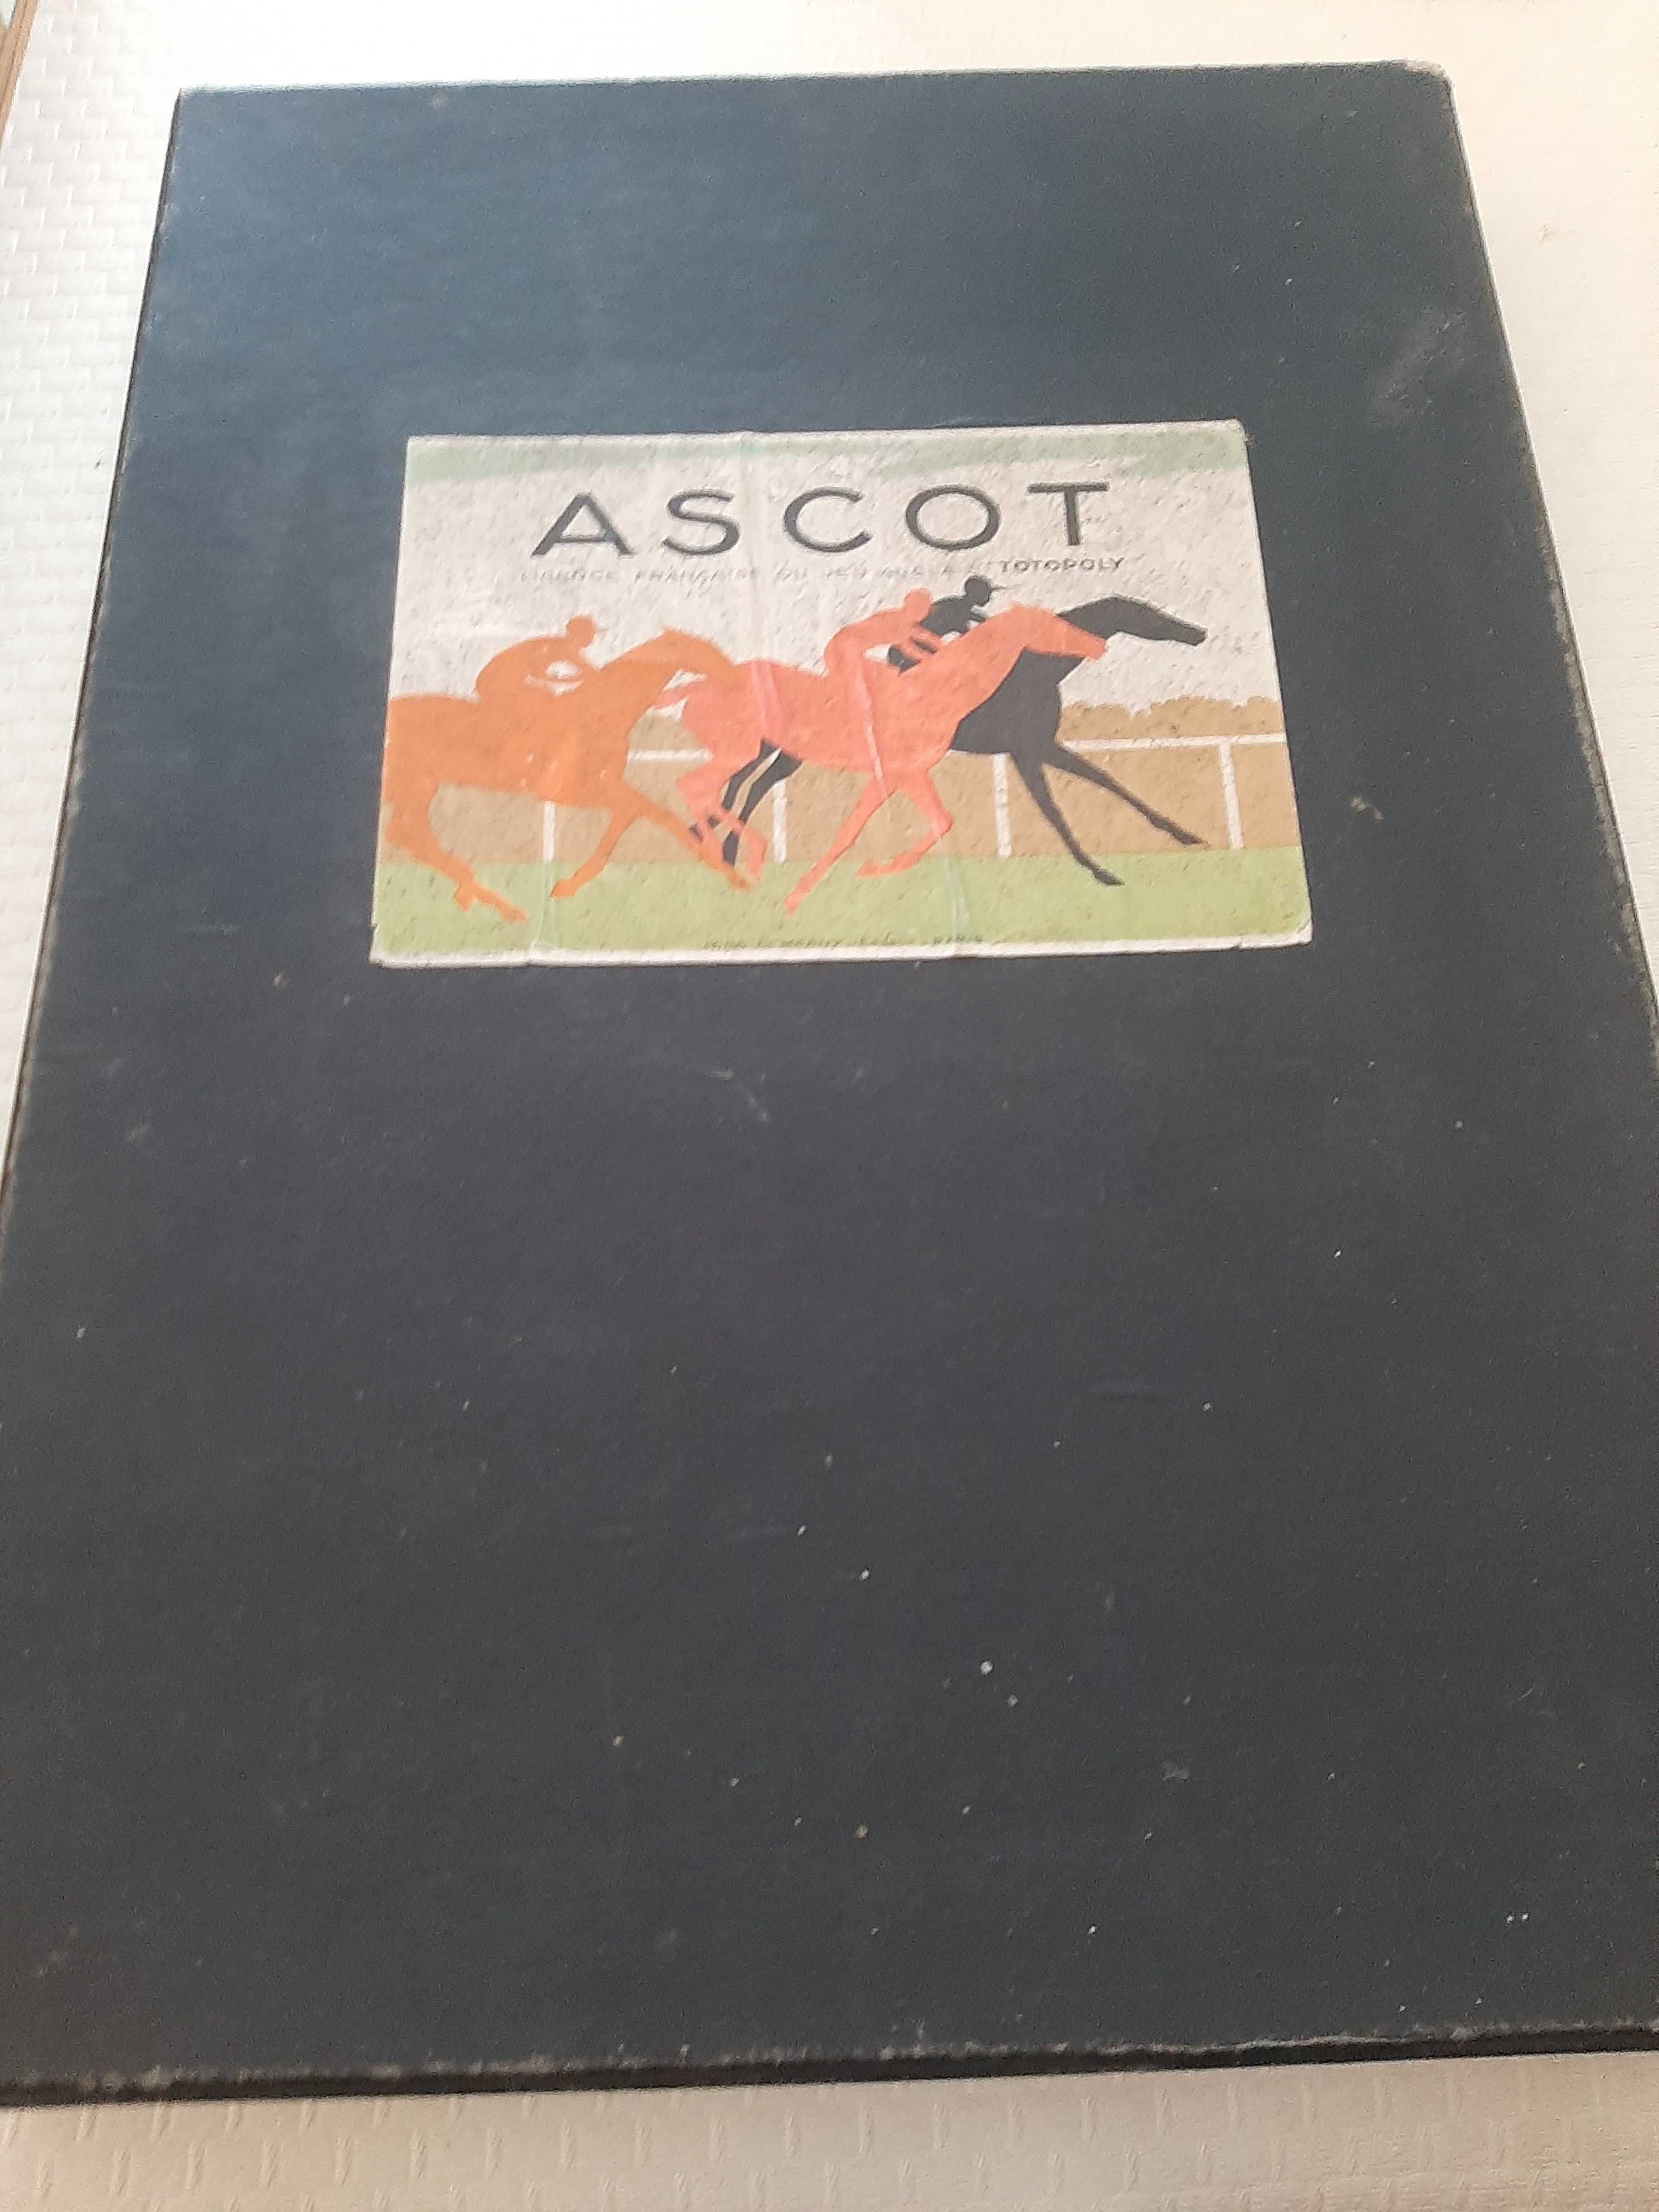 Jogo de tabuleiro Ascot Totopoly antigo